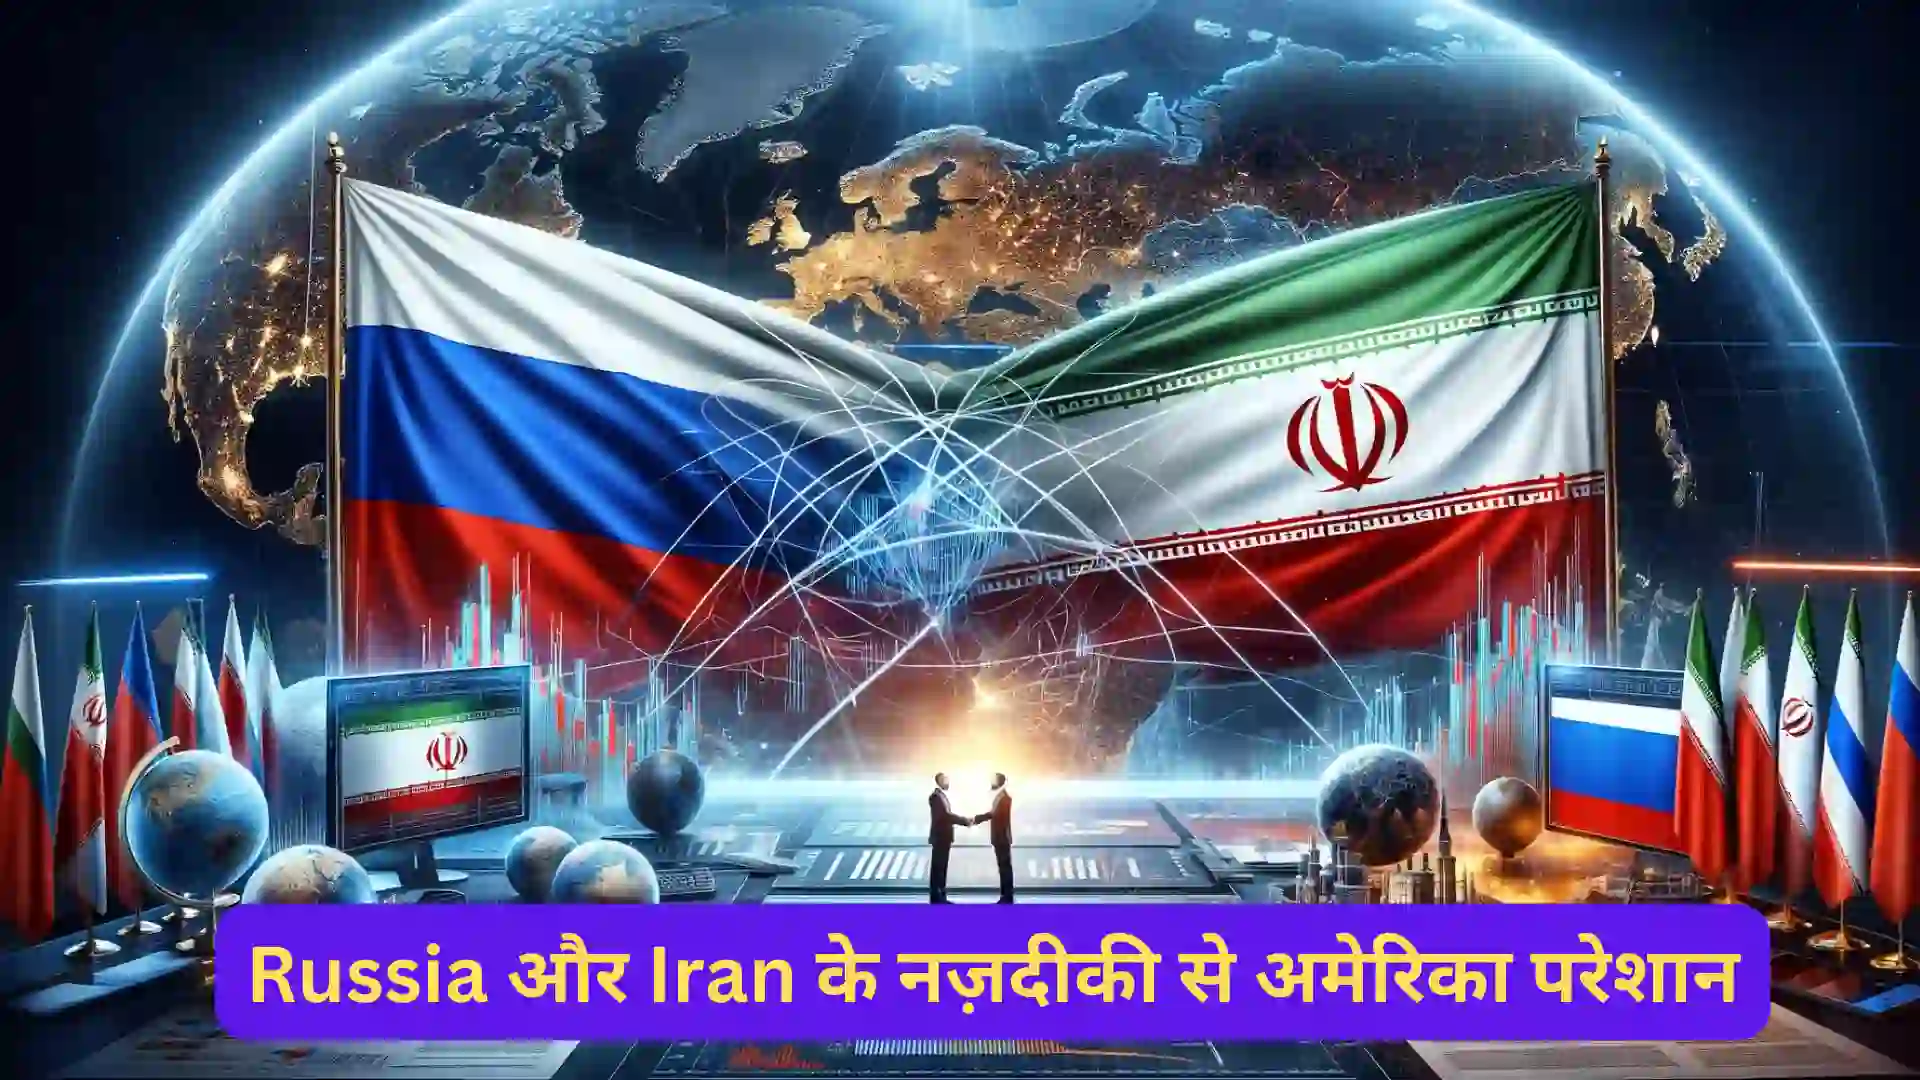 Russia और Iran के नज़दीकी से अमेरिका परेशान